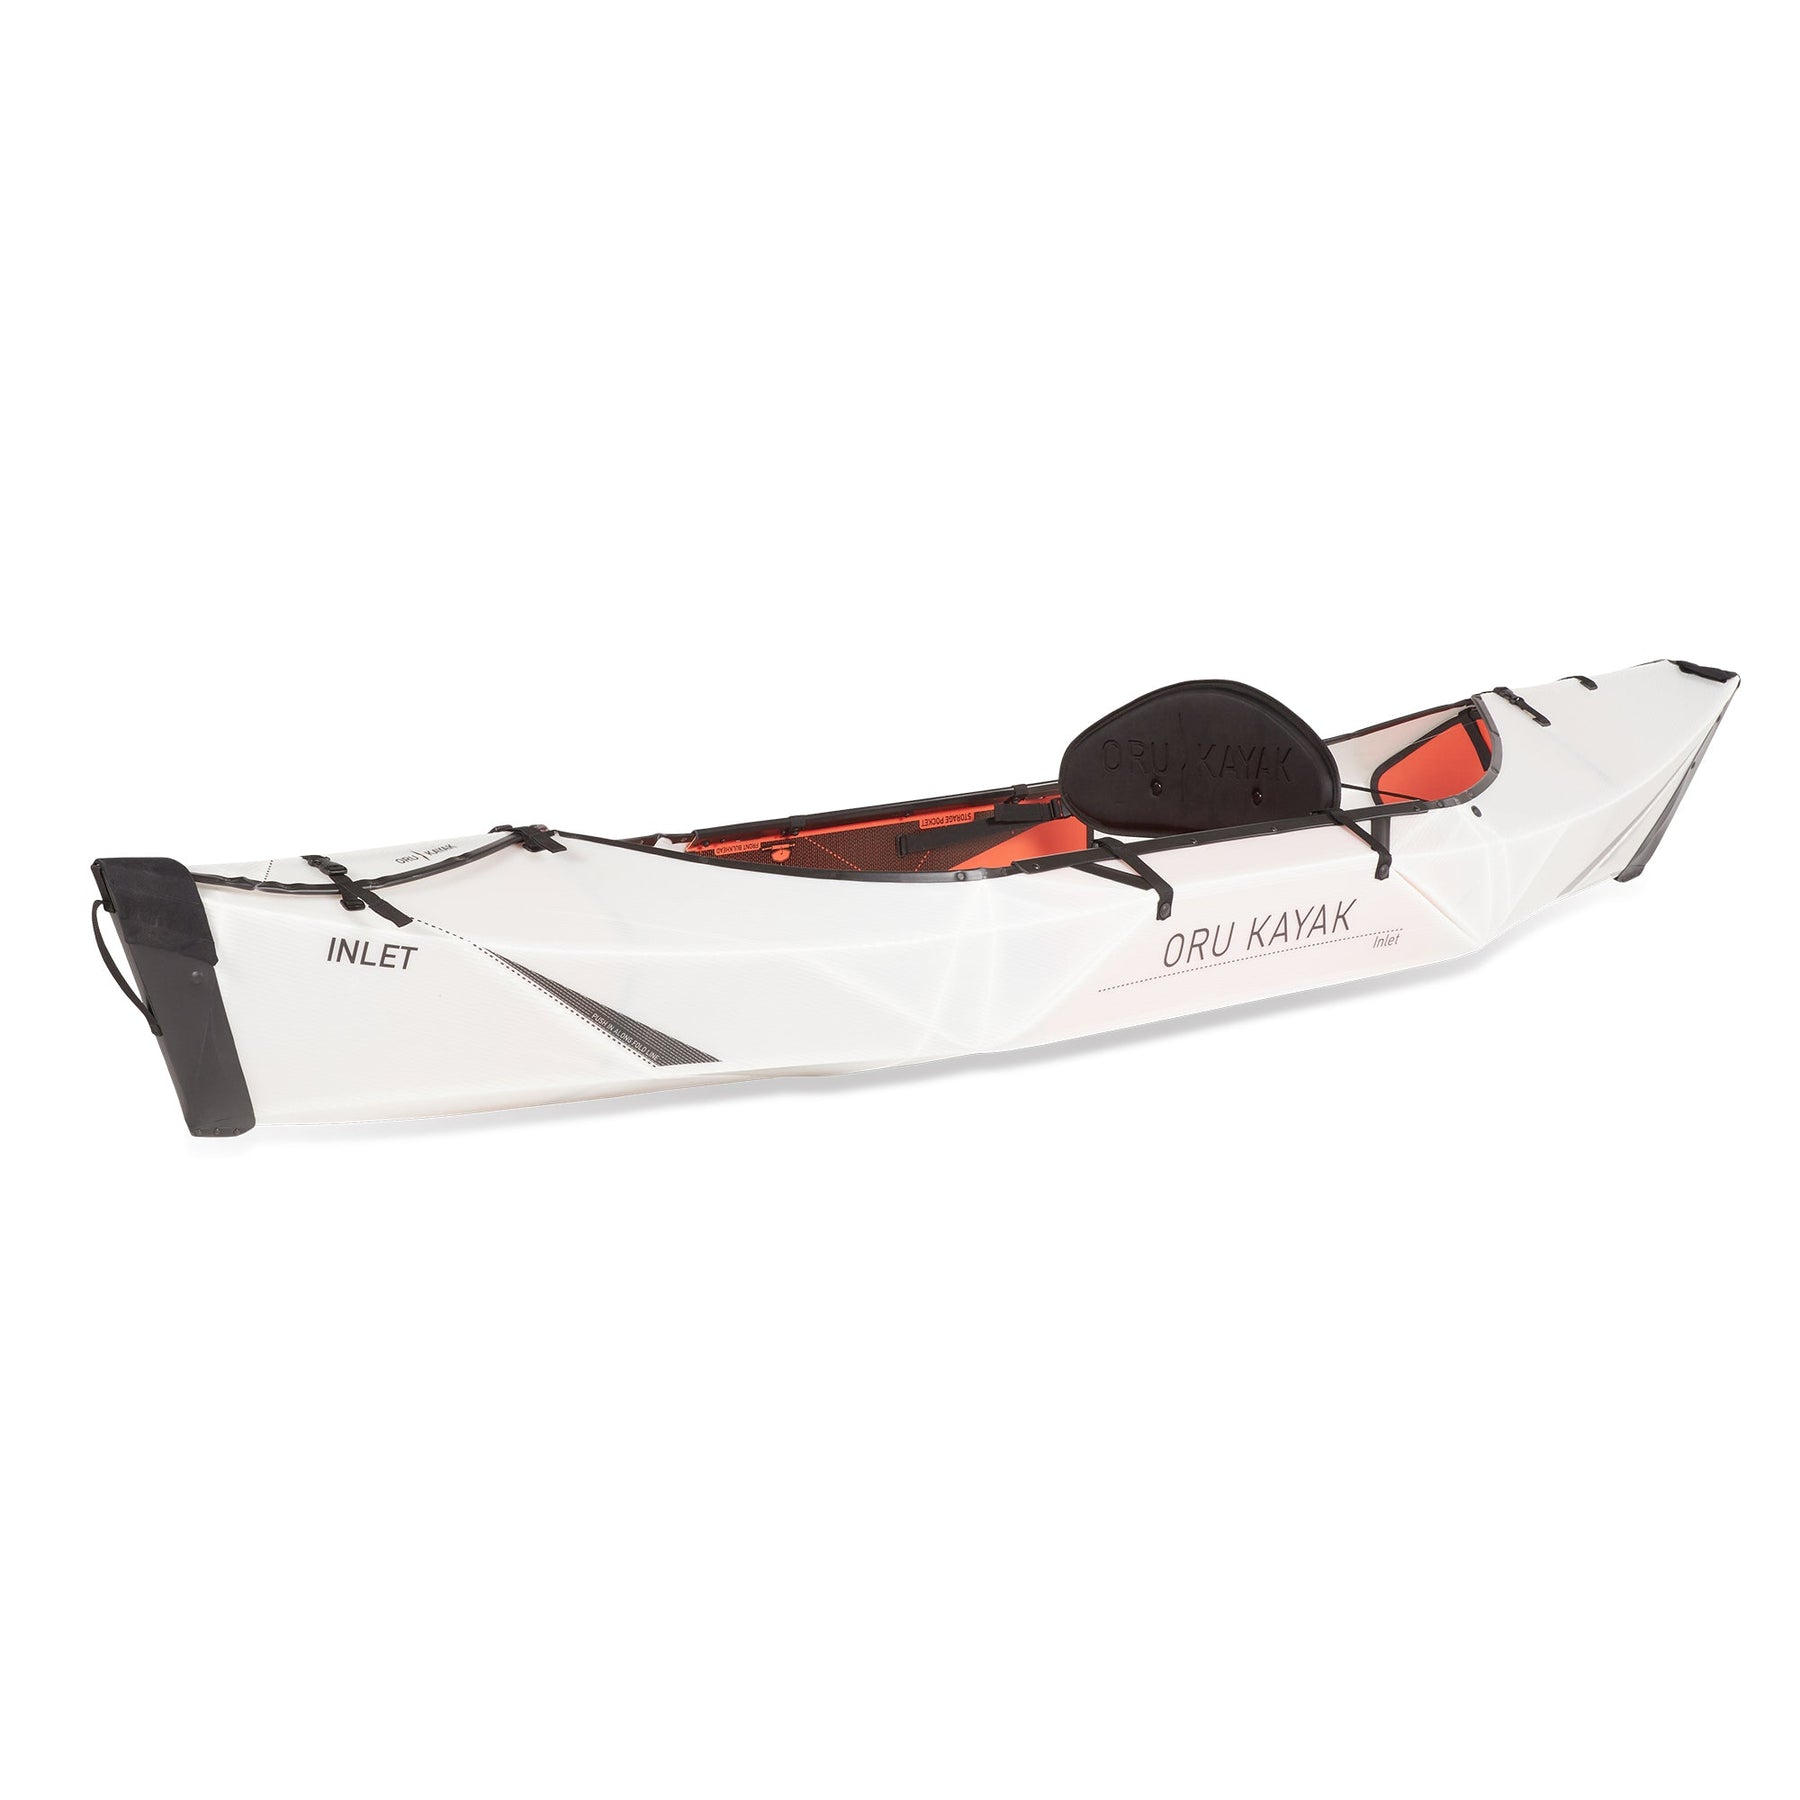 Inlet Kayak